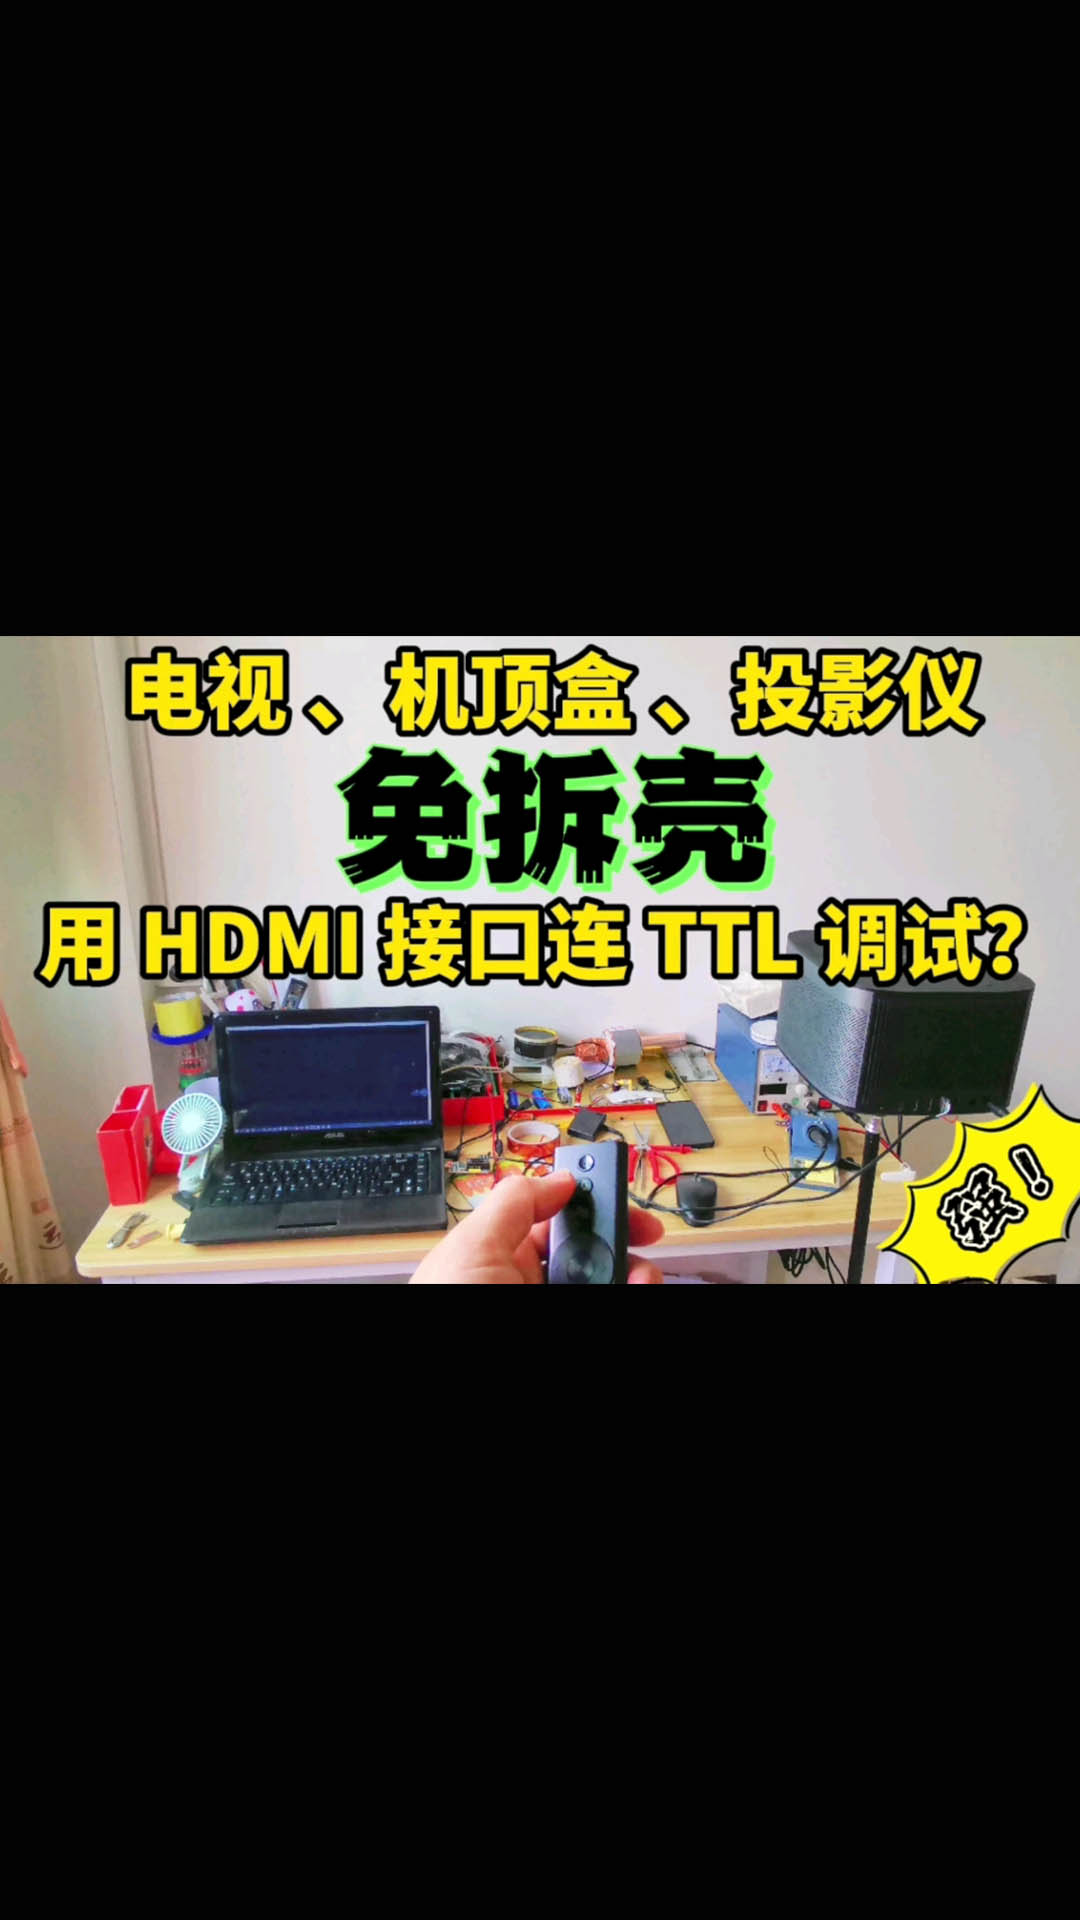 教你用电视的HDMI接口进行TTL调试 